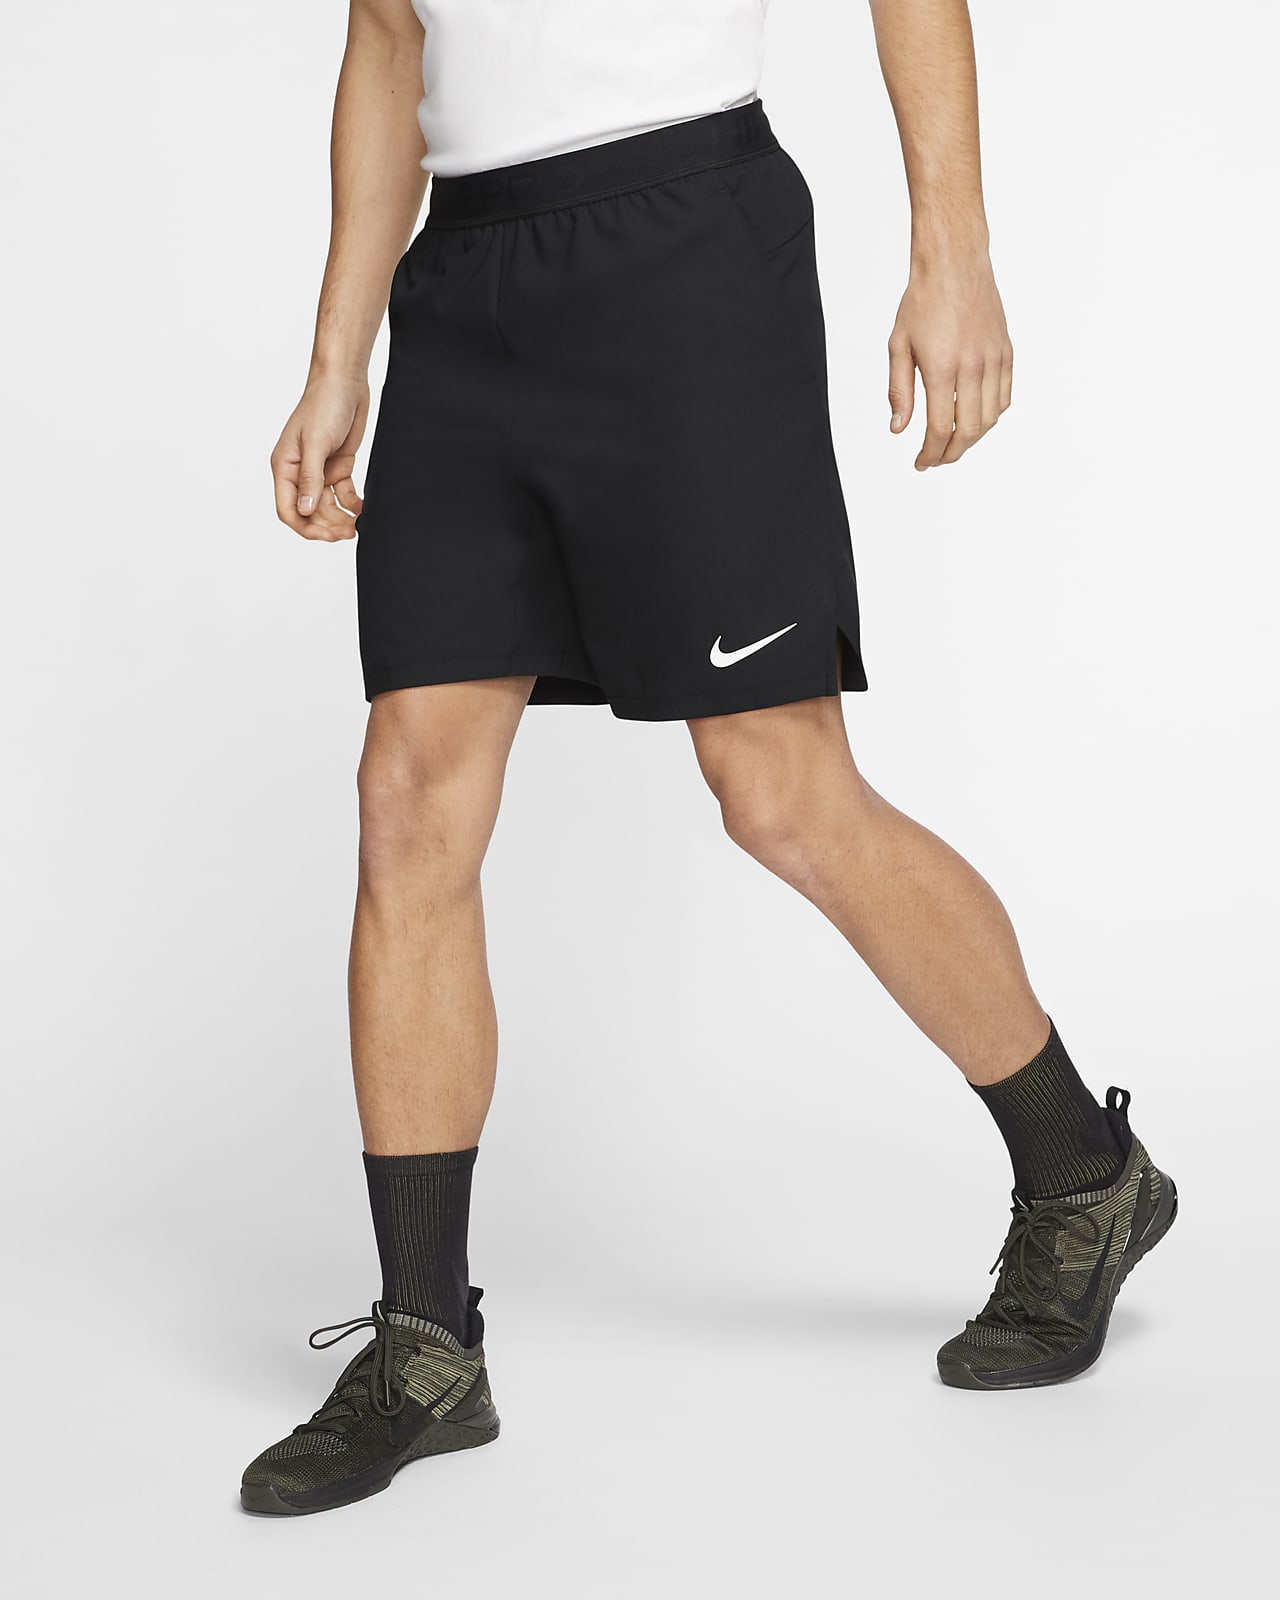 Nike Pro Flex Vent Max Men's Shorts. Nike LU